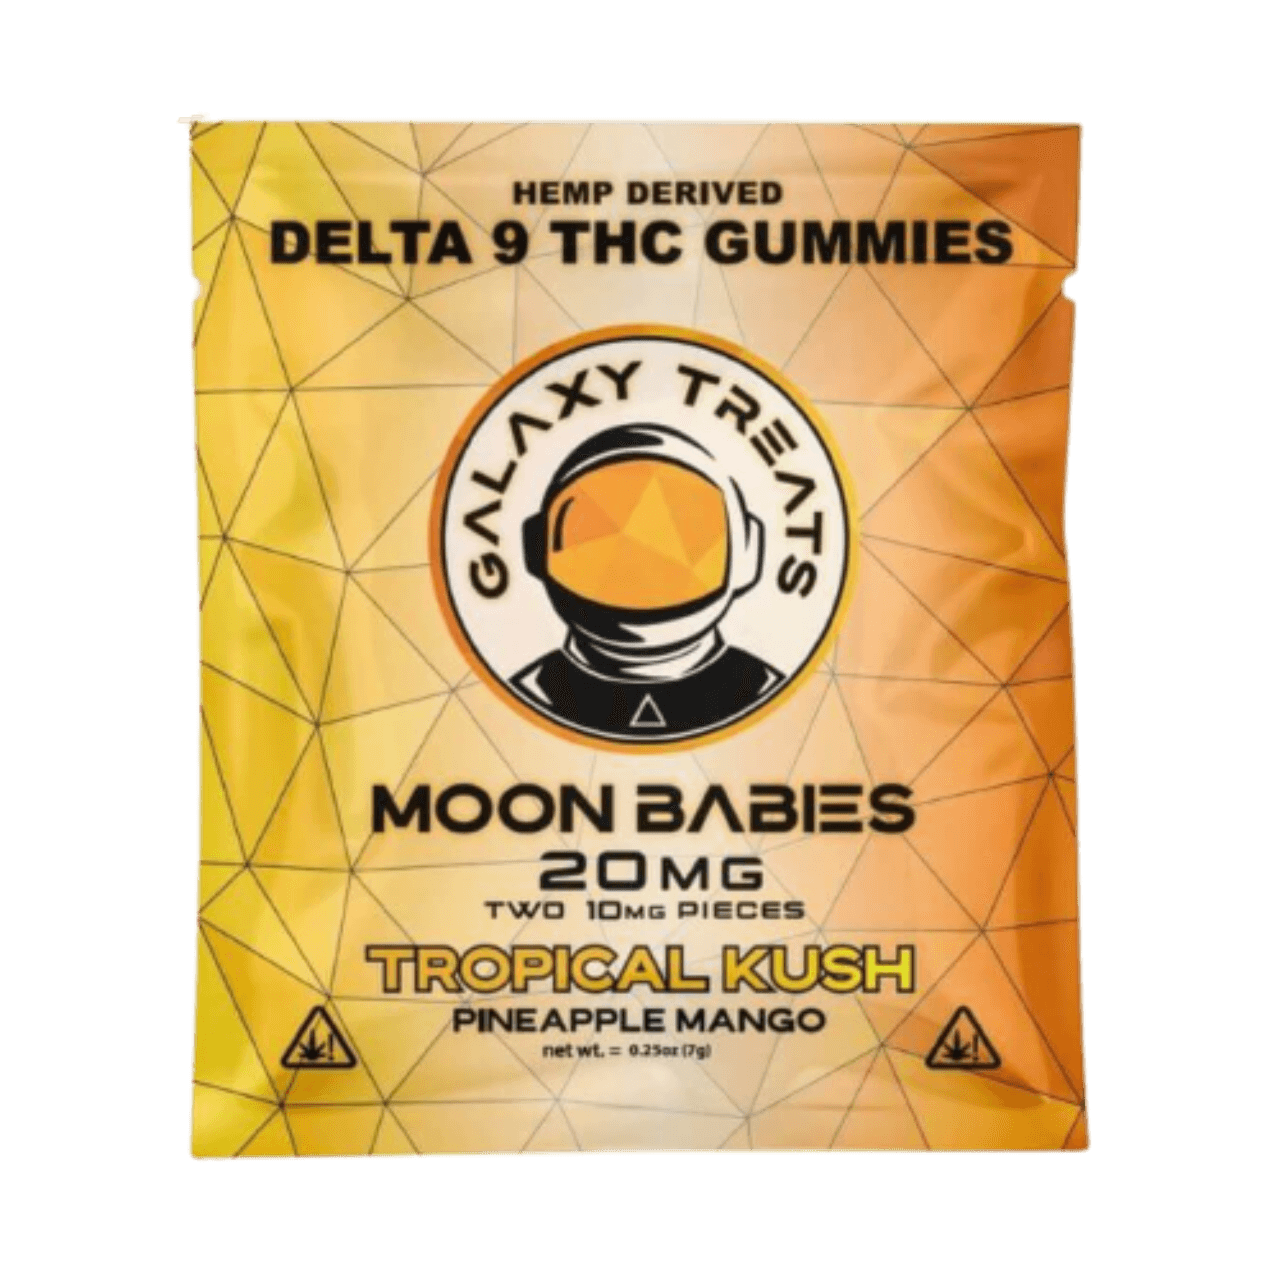 Moon Babies Delta 9 Gummies 20mg